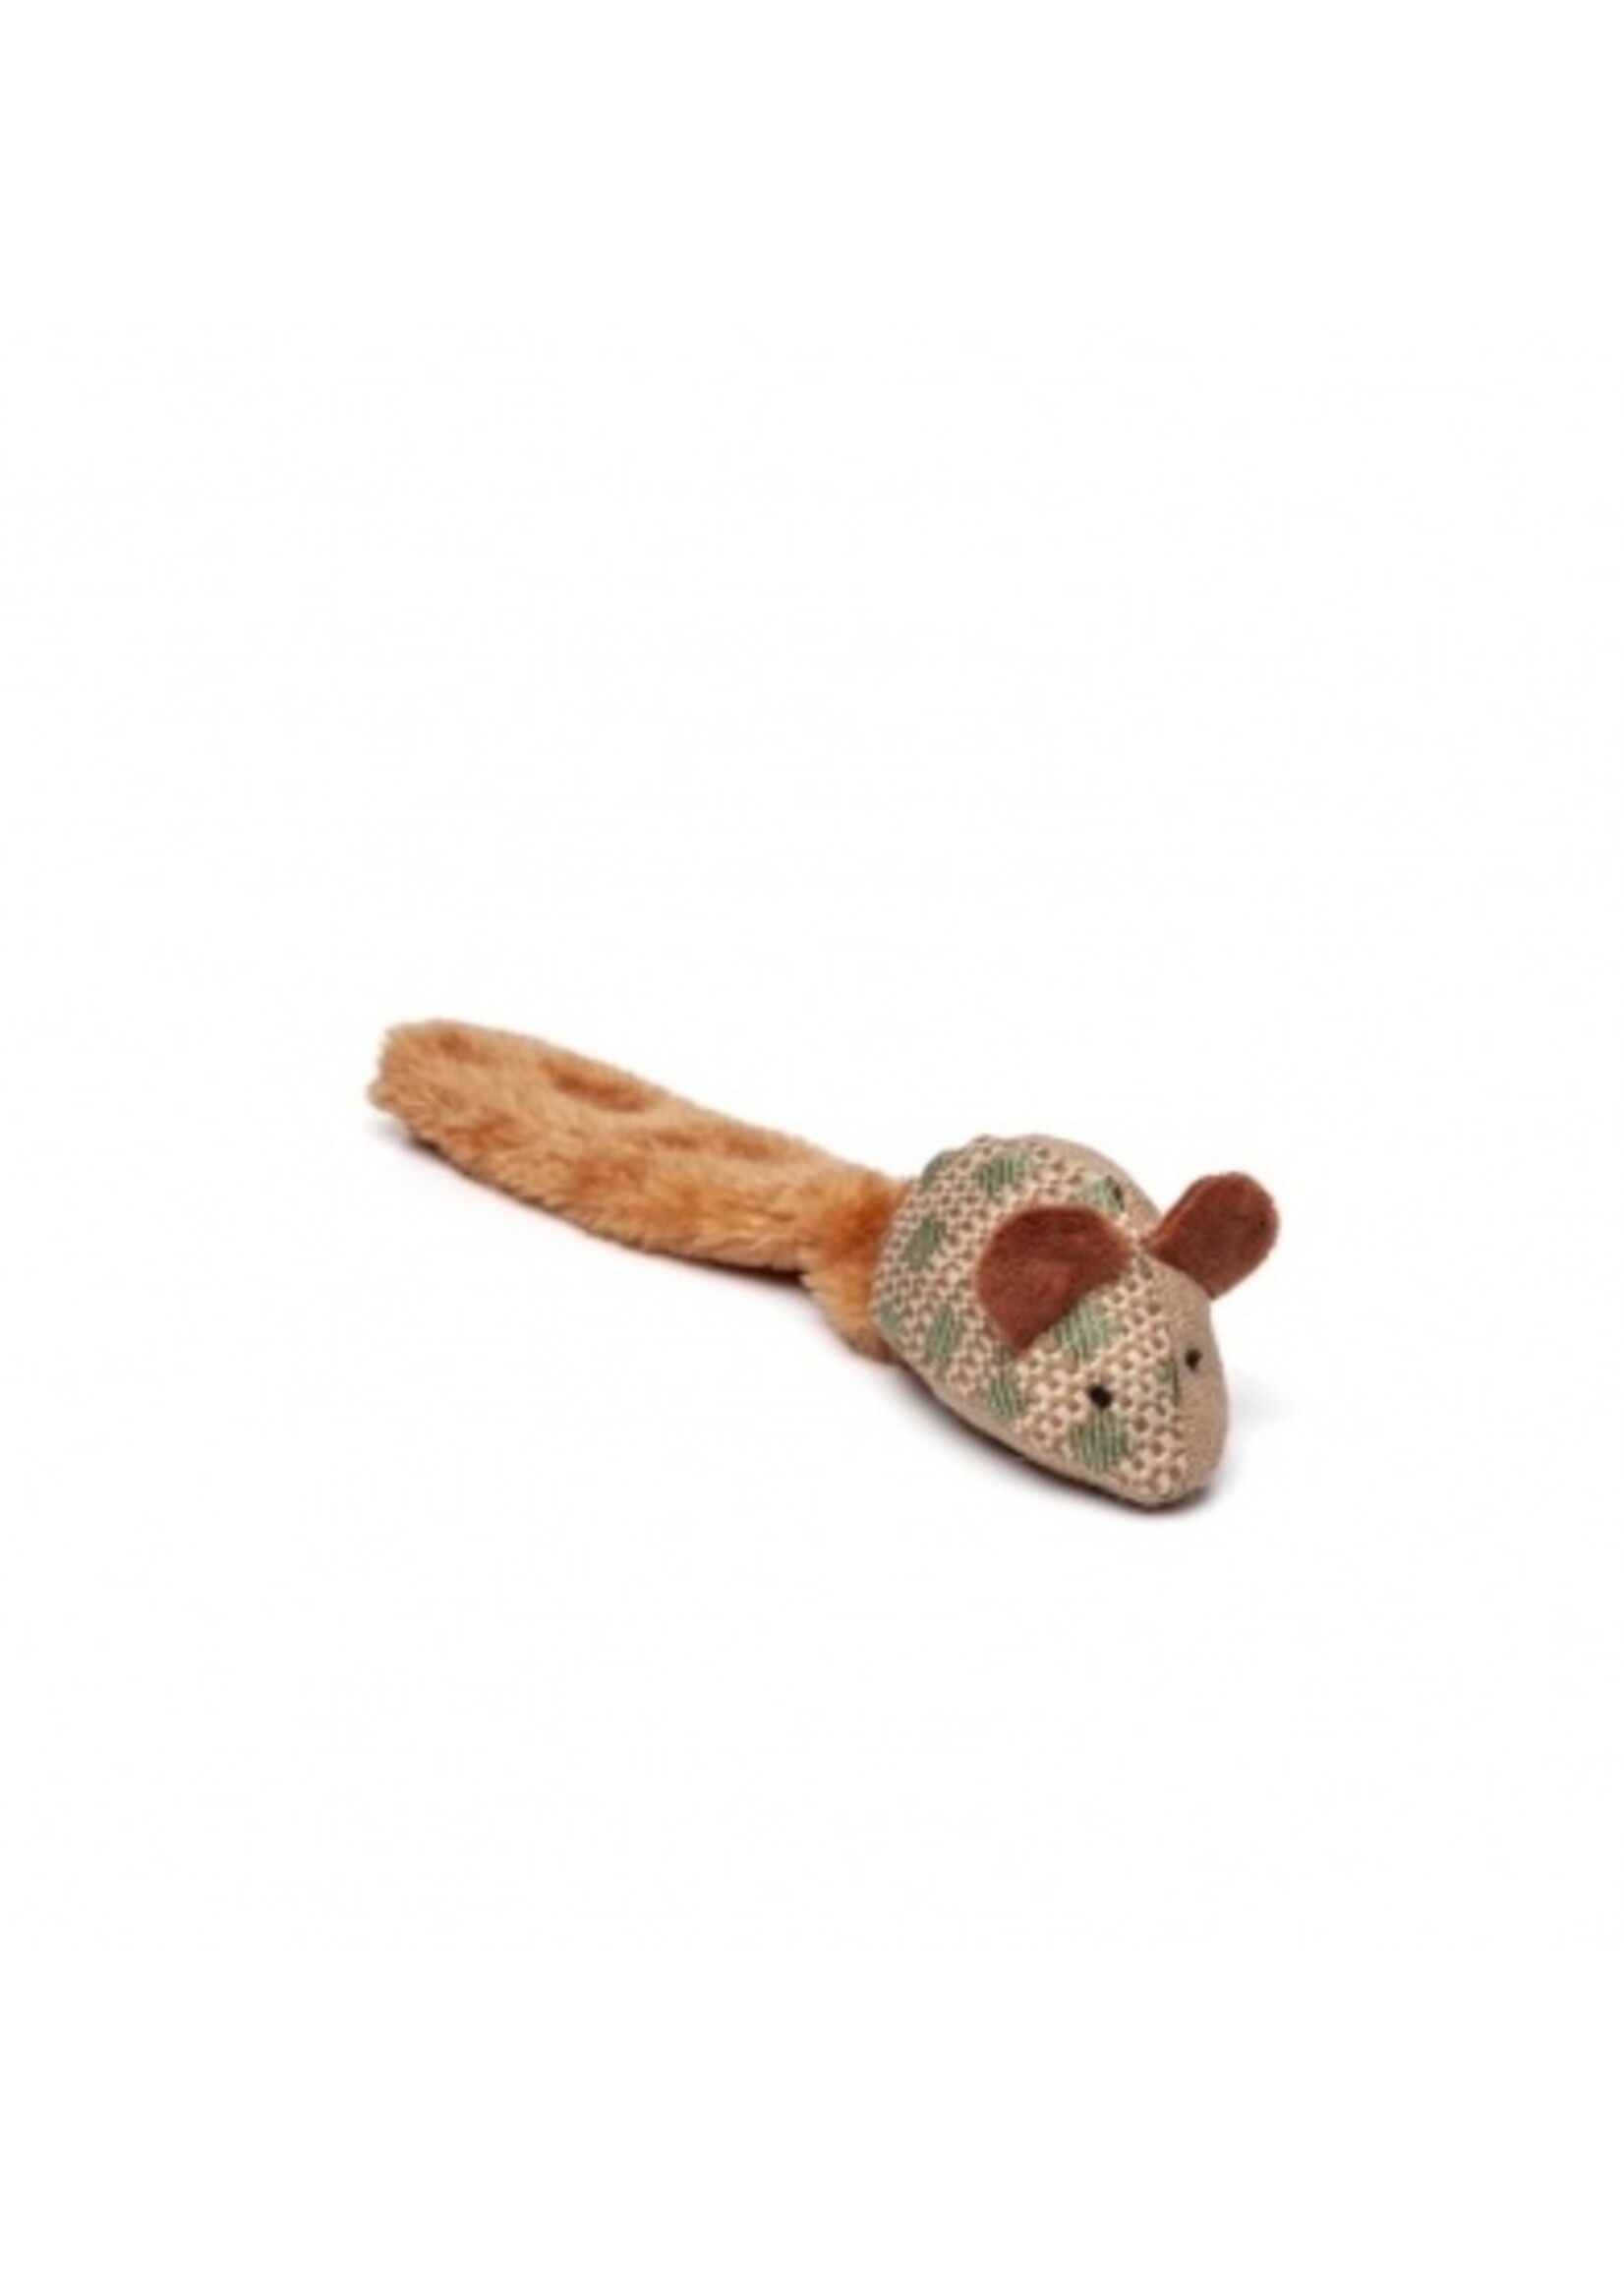 Budz Budz Mouse w/ Giant Tail Cat Toy 12"